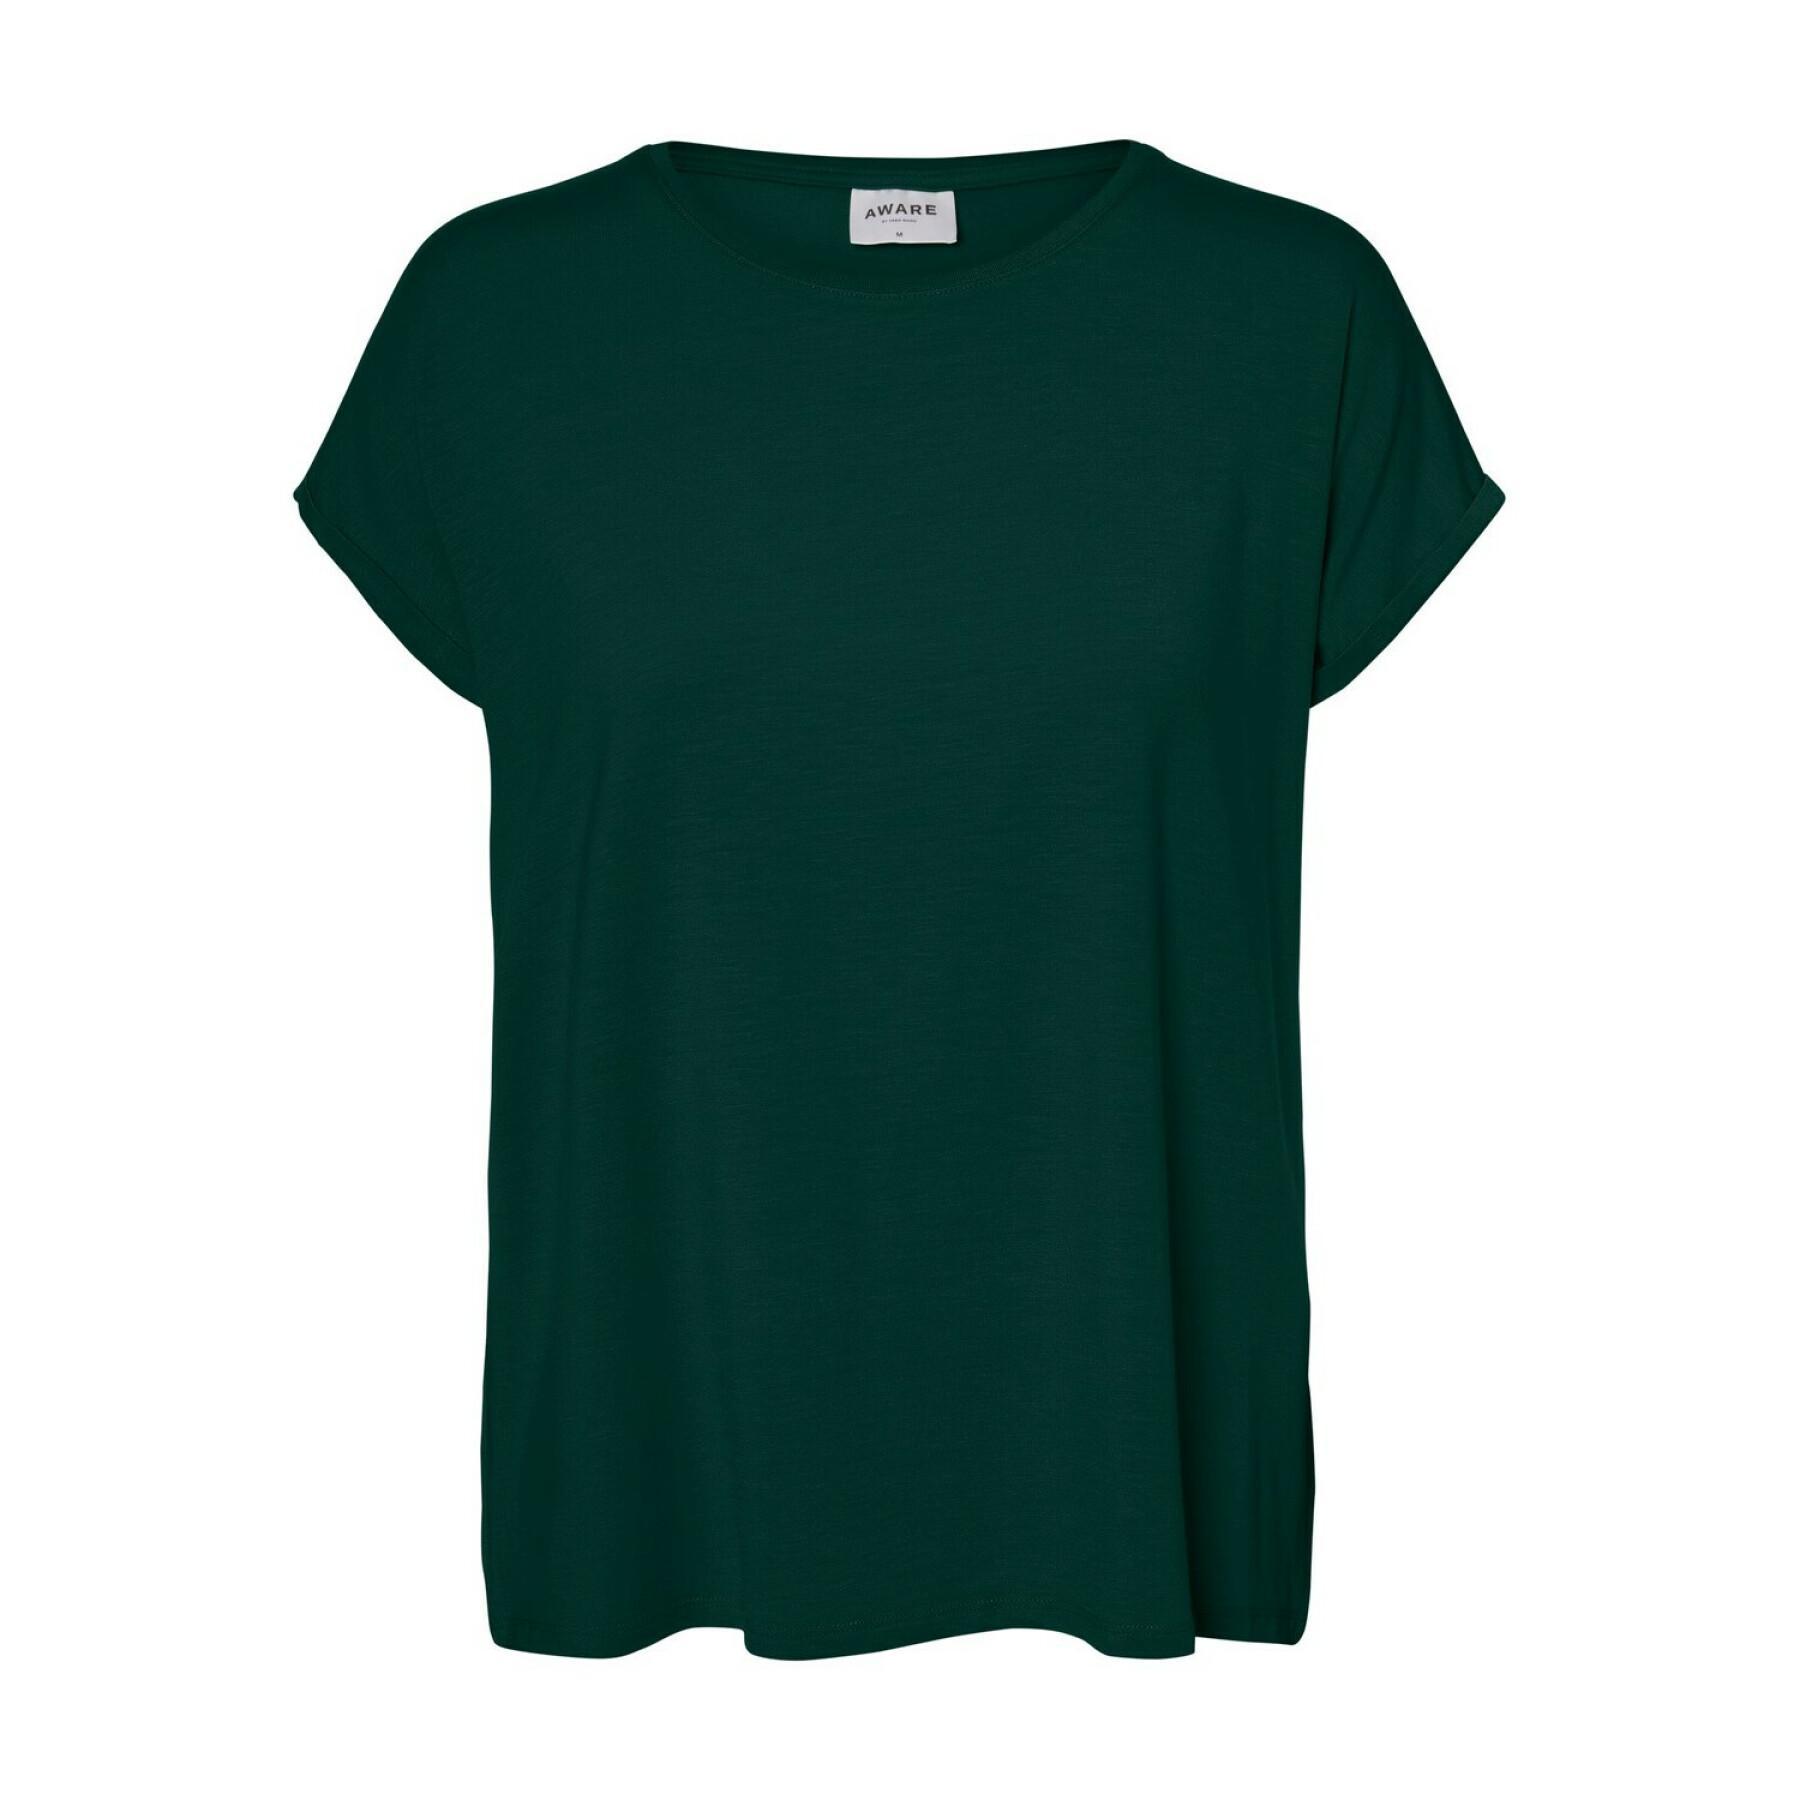 Dames-T-shirt Vero Moda vmava